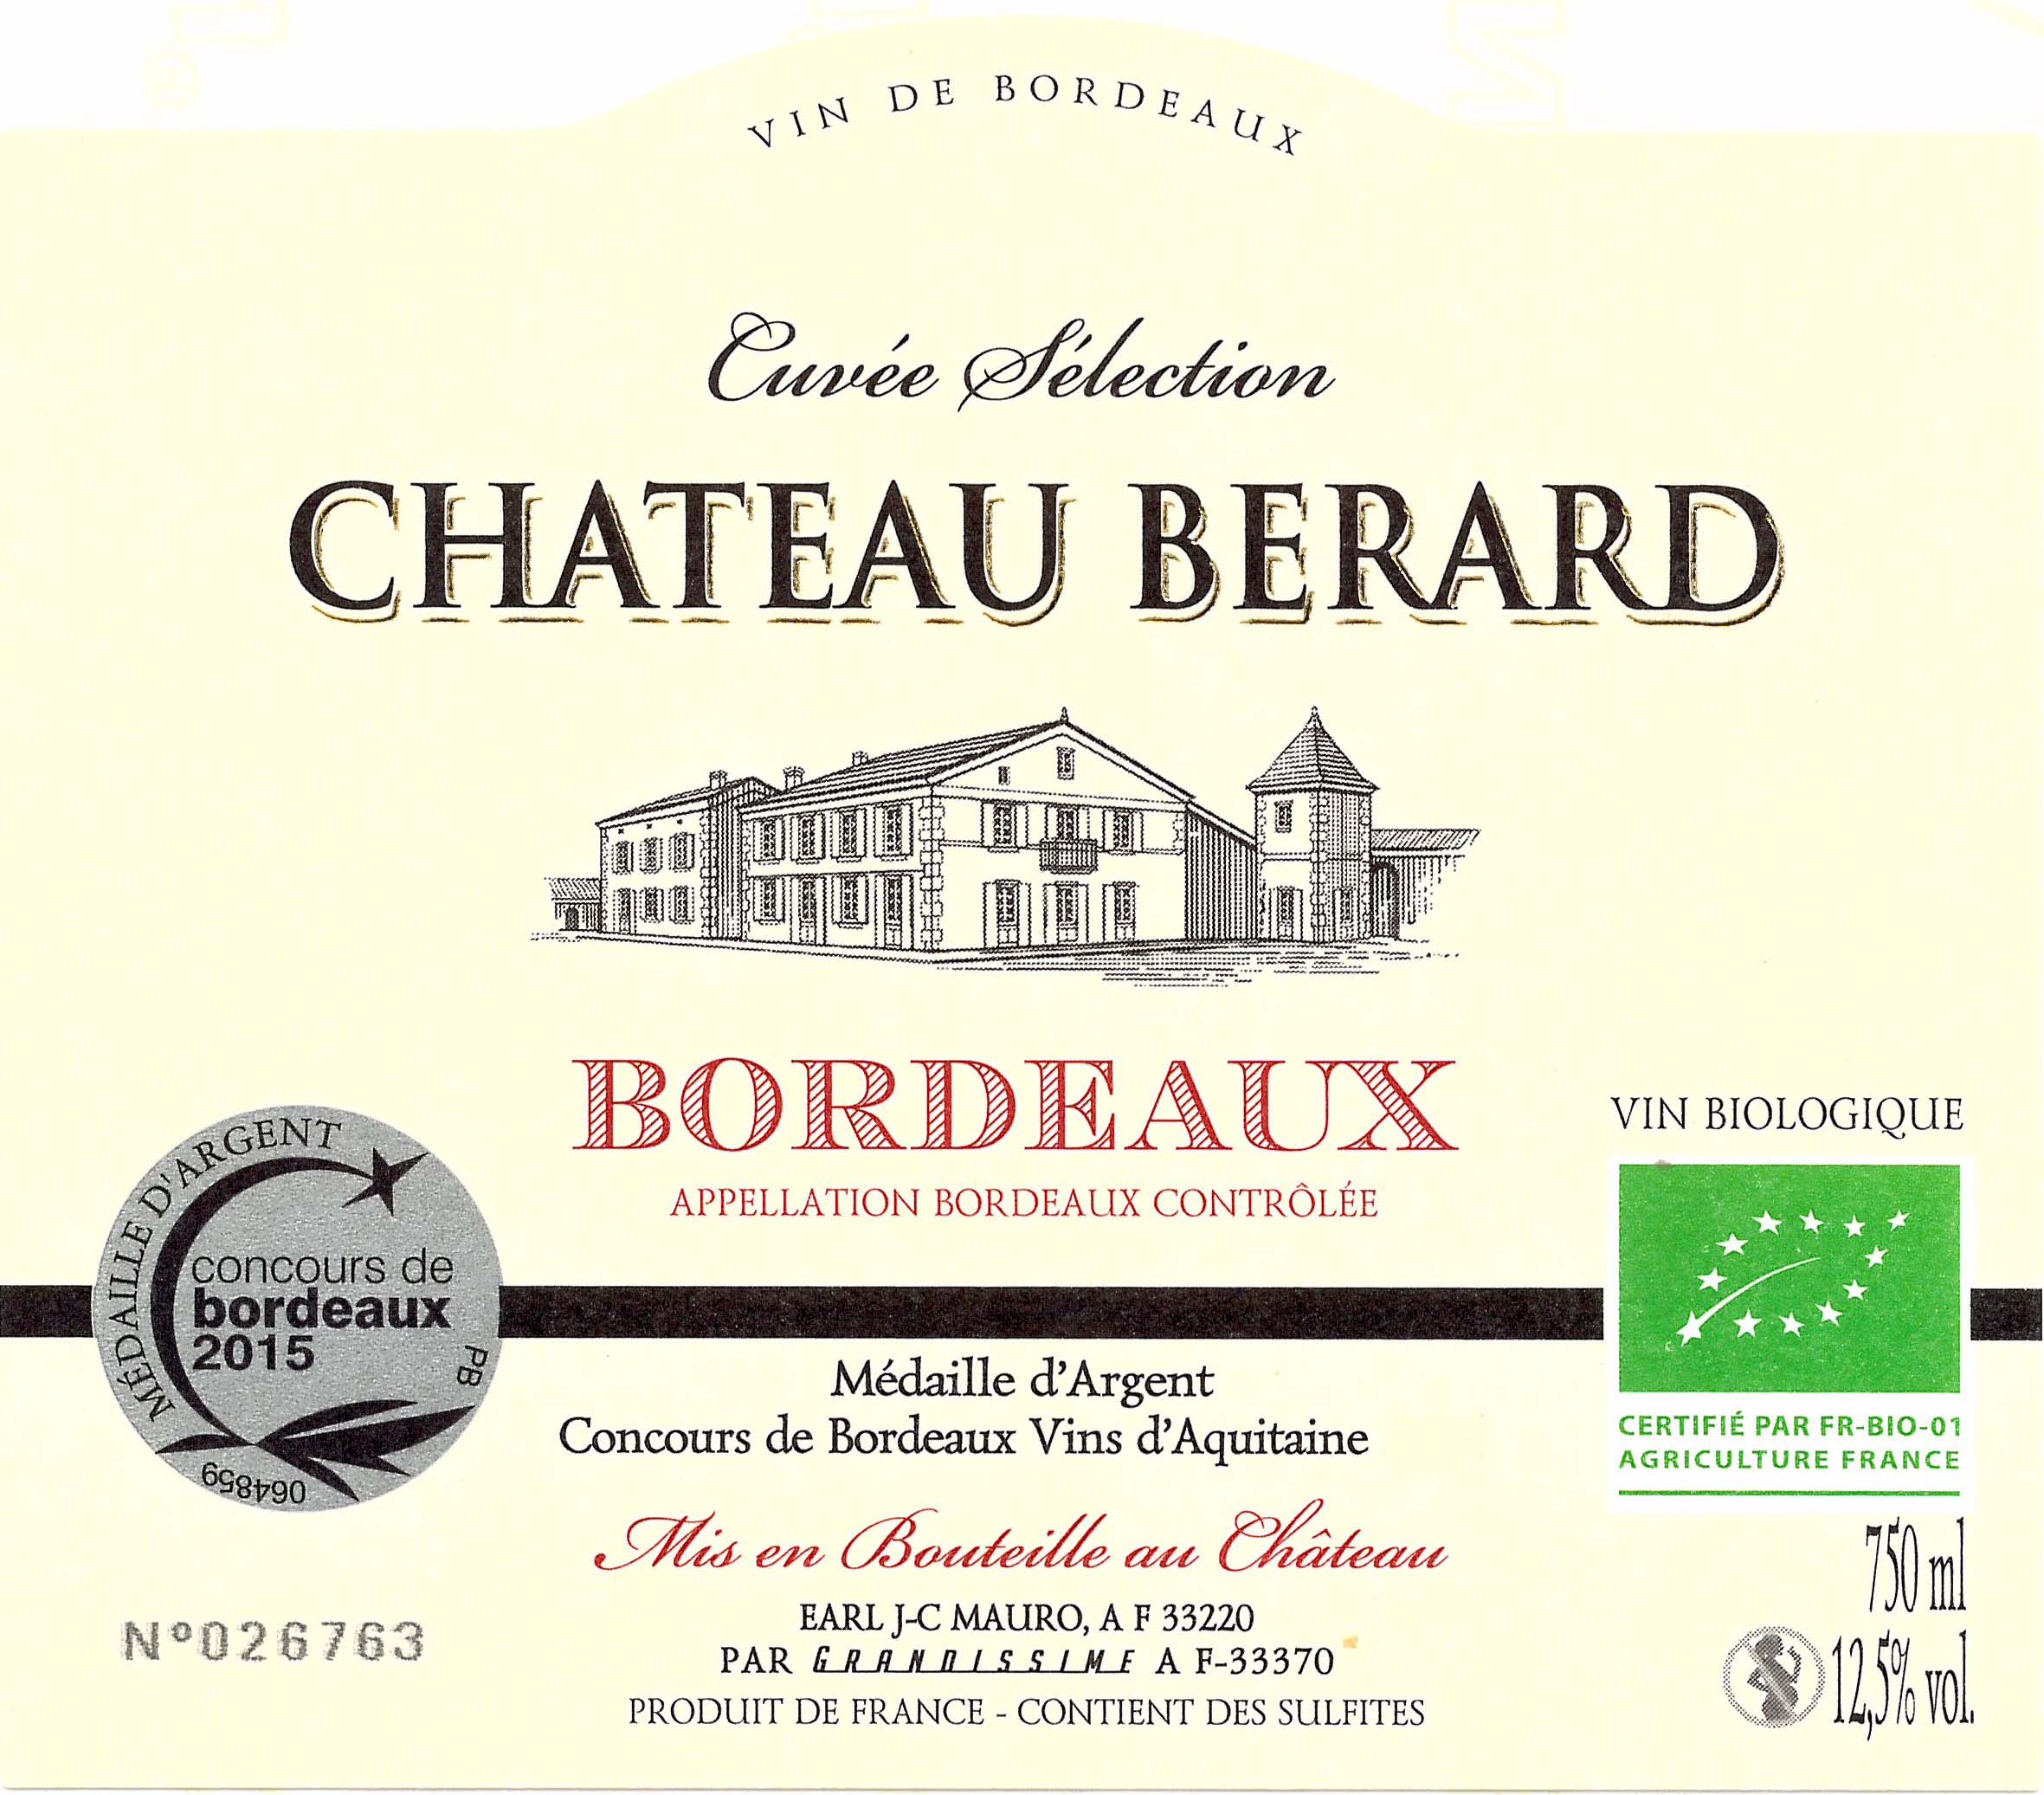 Chateau Berard label